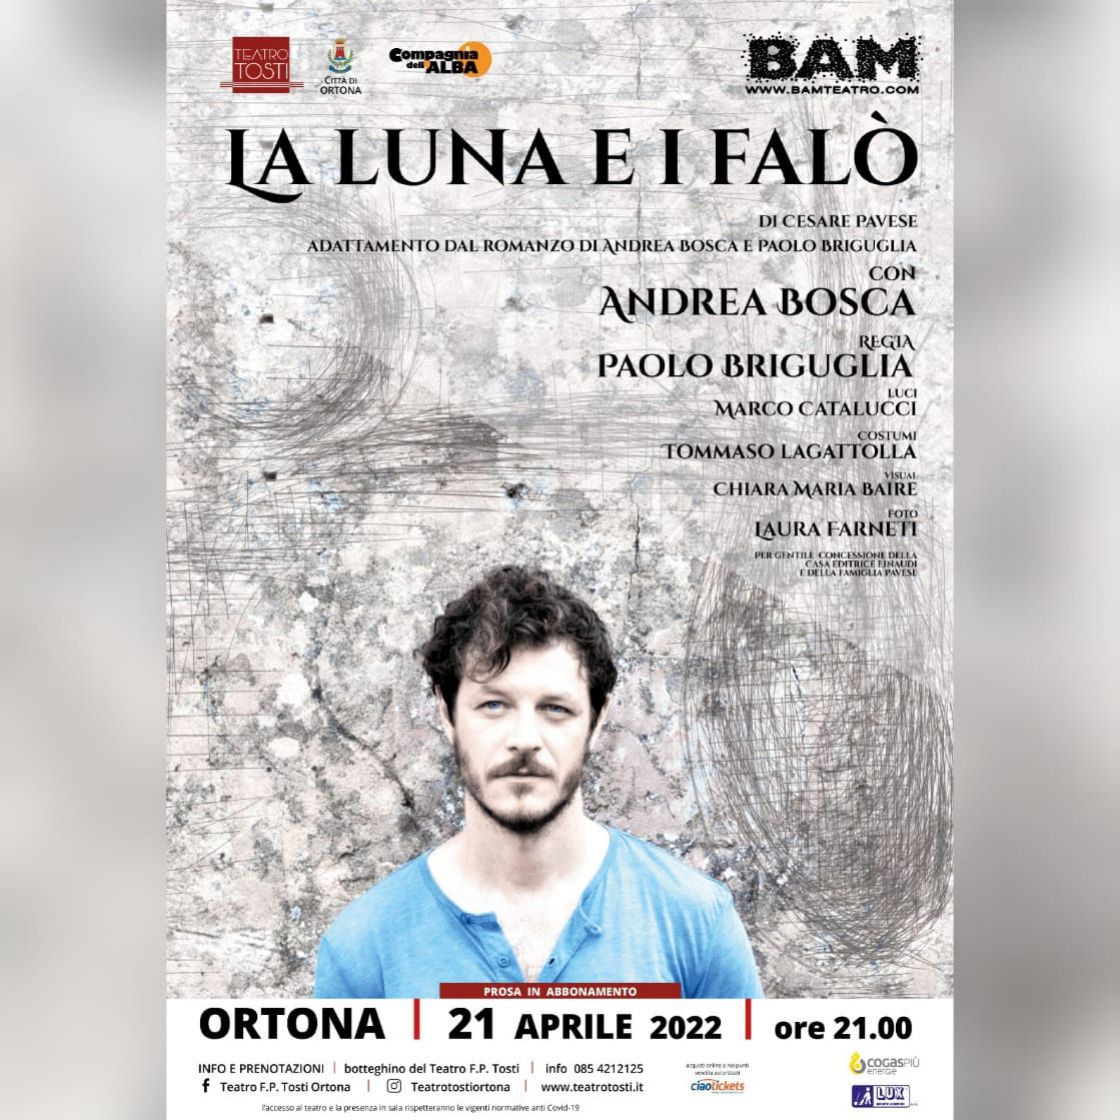 Il capolavoro di Pavese in scena al Teatro Tosti di Ortona - 21 aprile 2022 ore 21.00